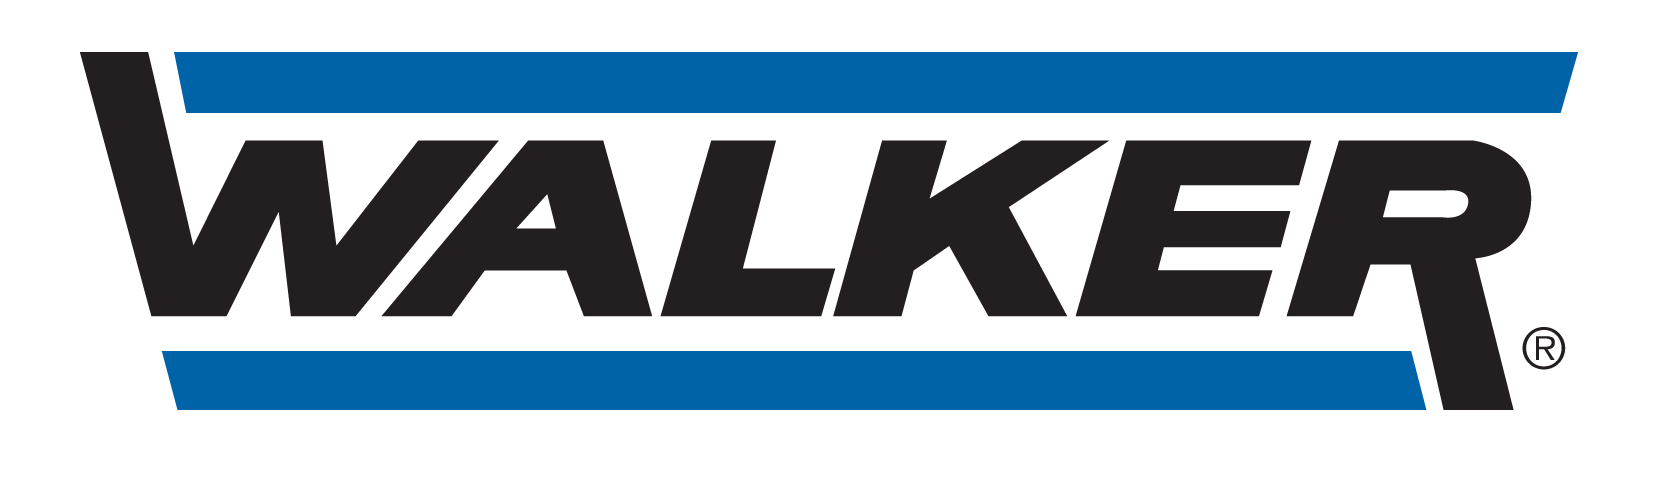 GARAGE TERPEREAU - logo Walker